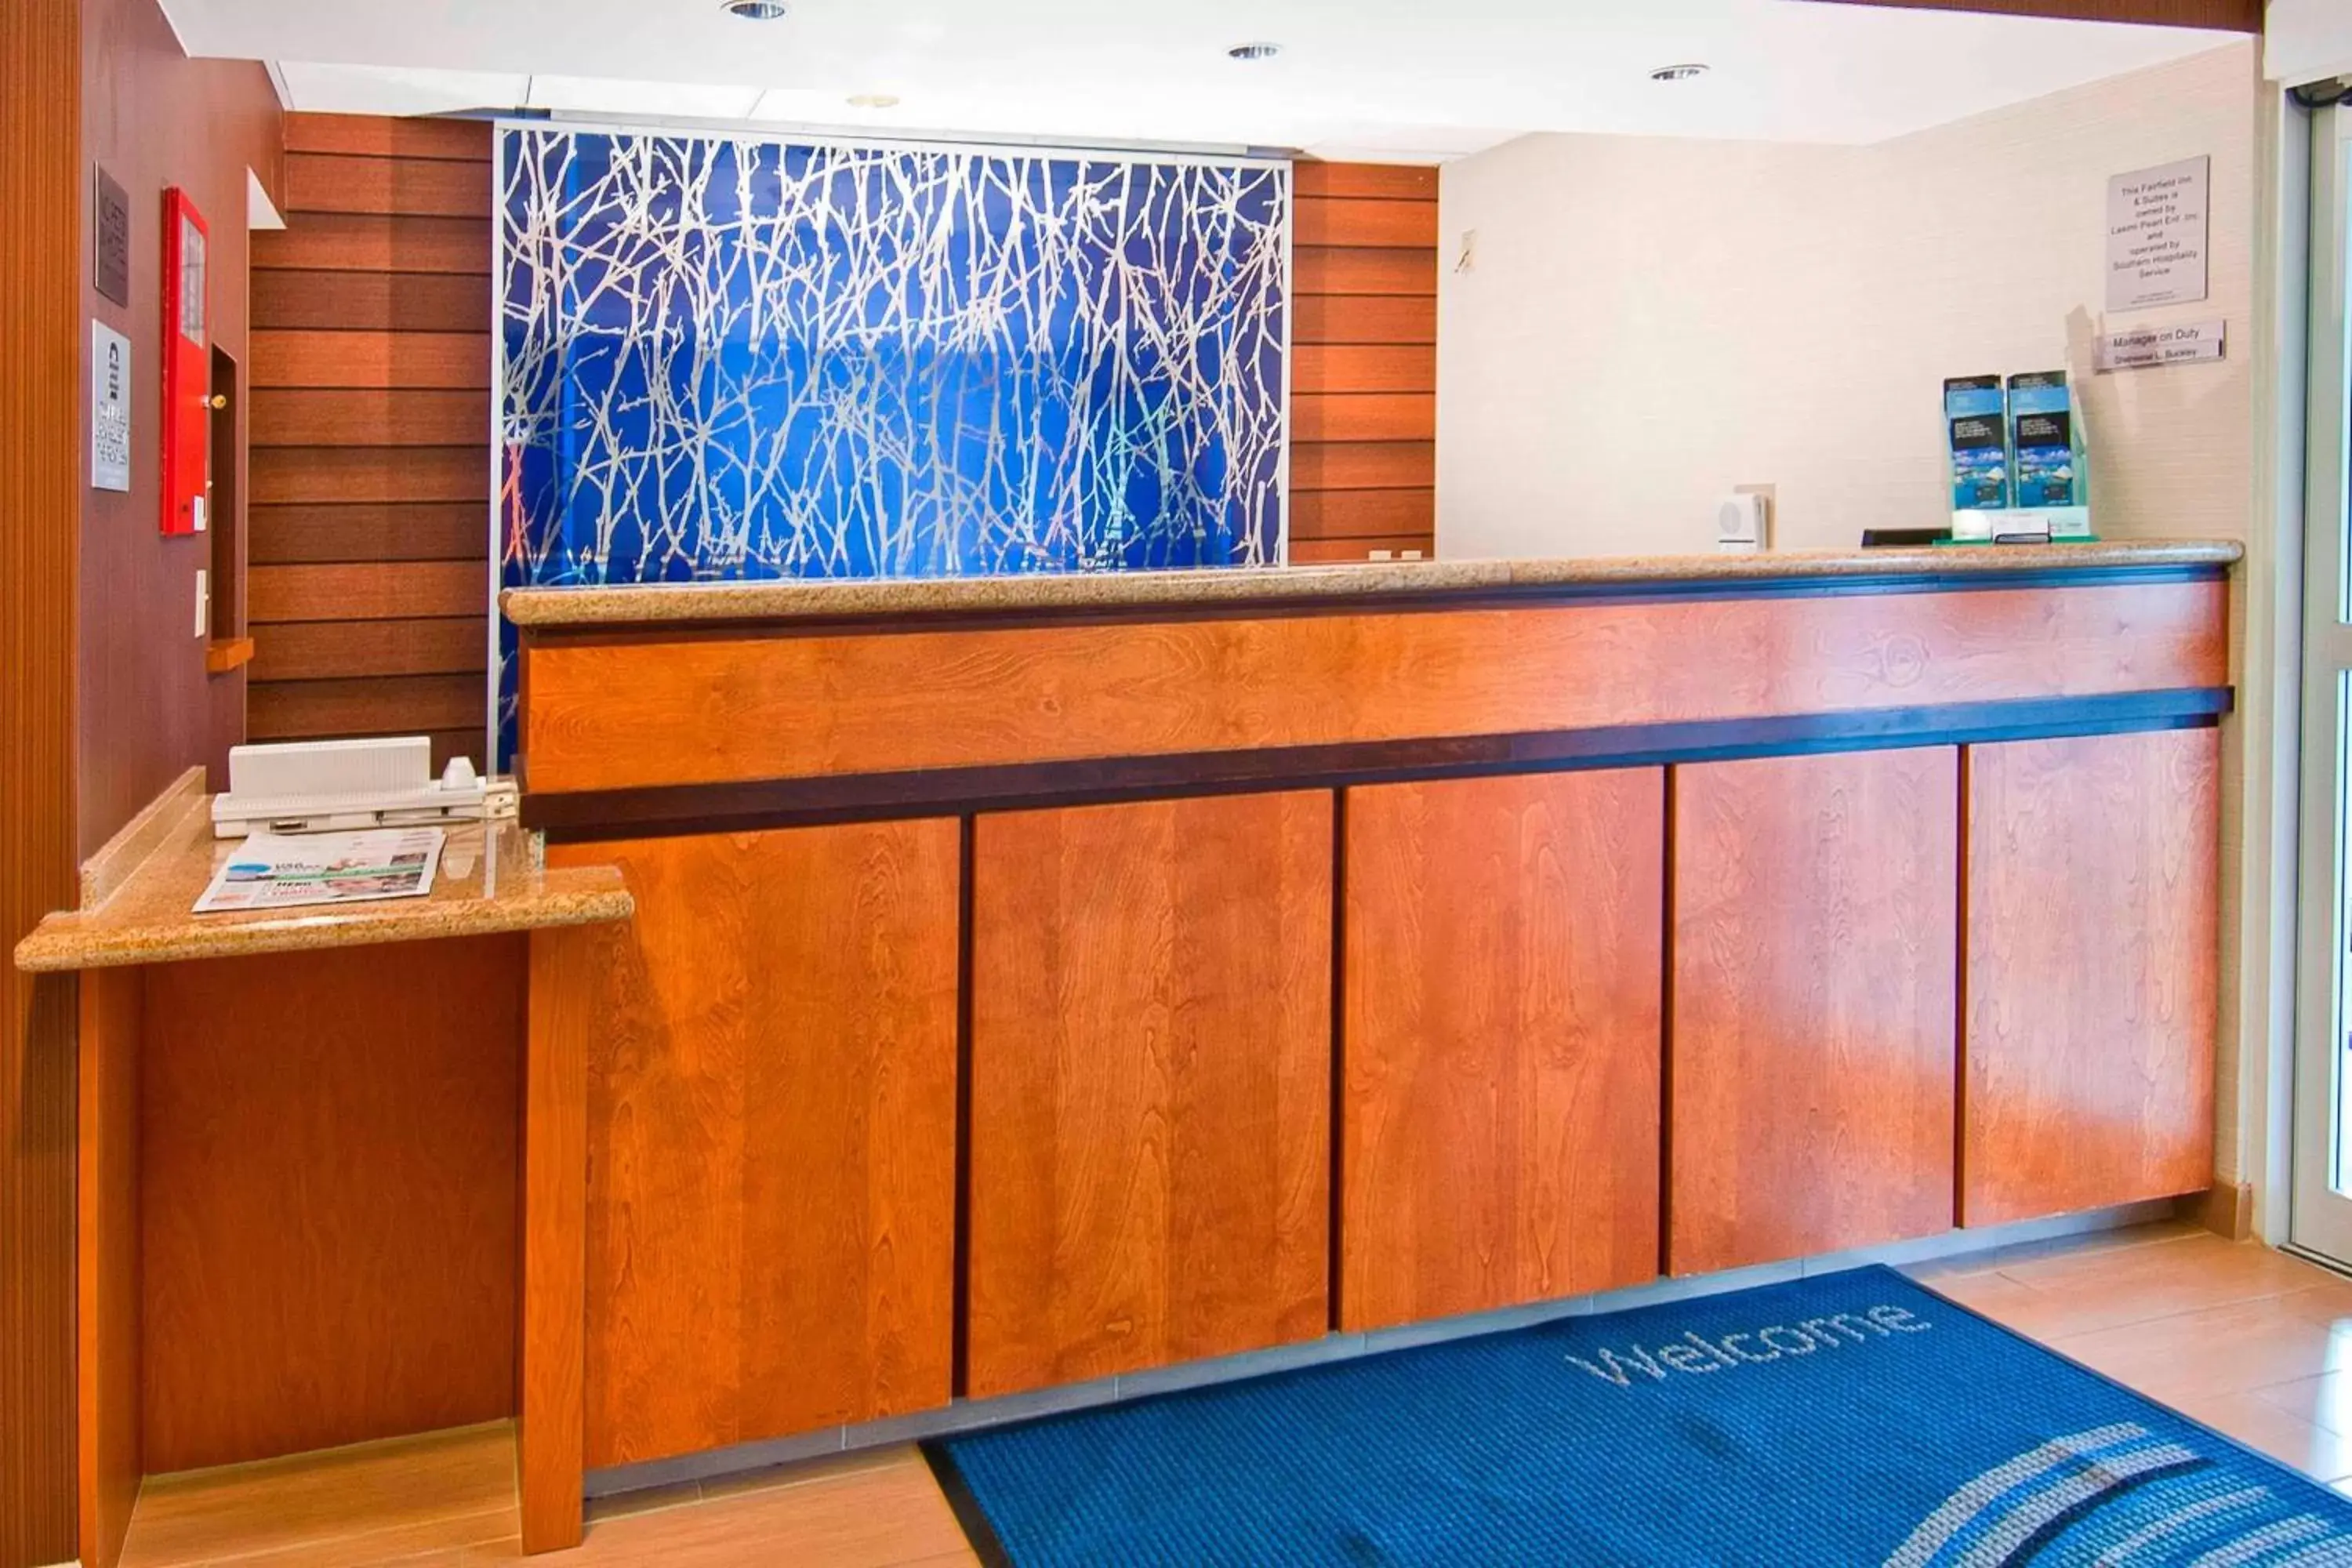 Lobby or reception, Lobby/Reception in Fairfield Inn & Suites Jackson Airport